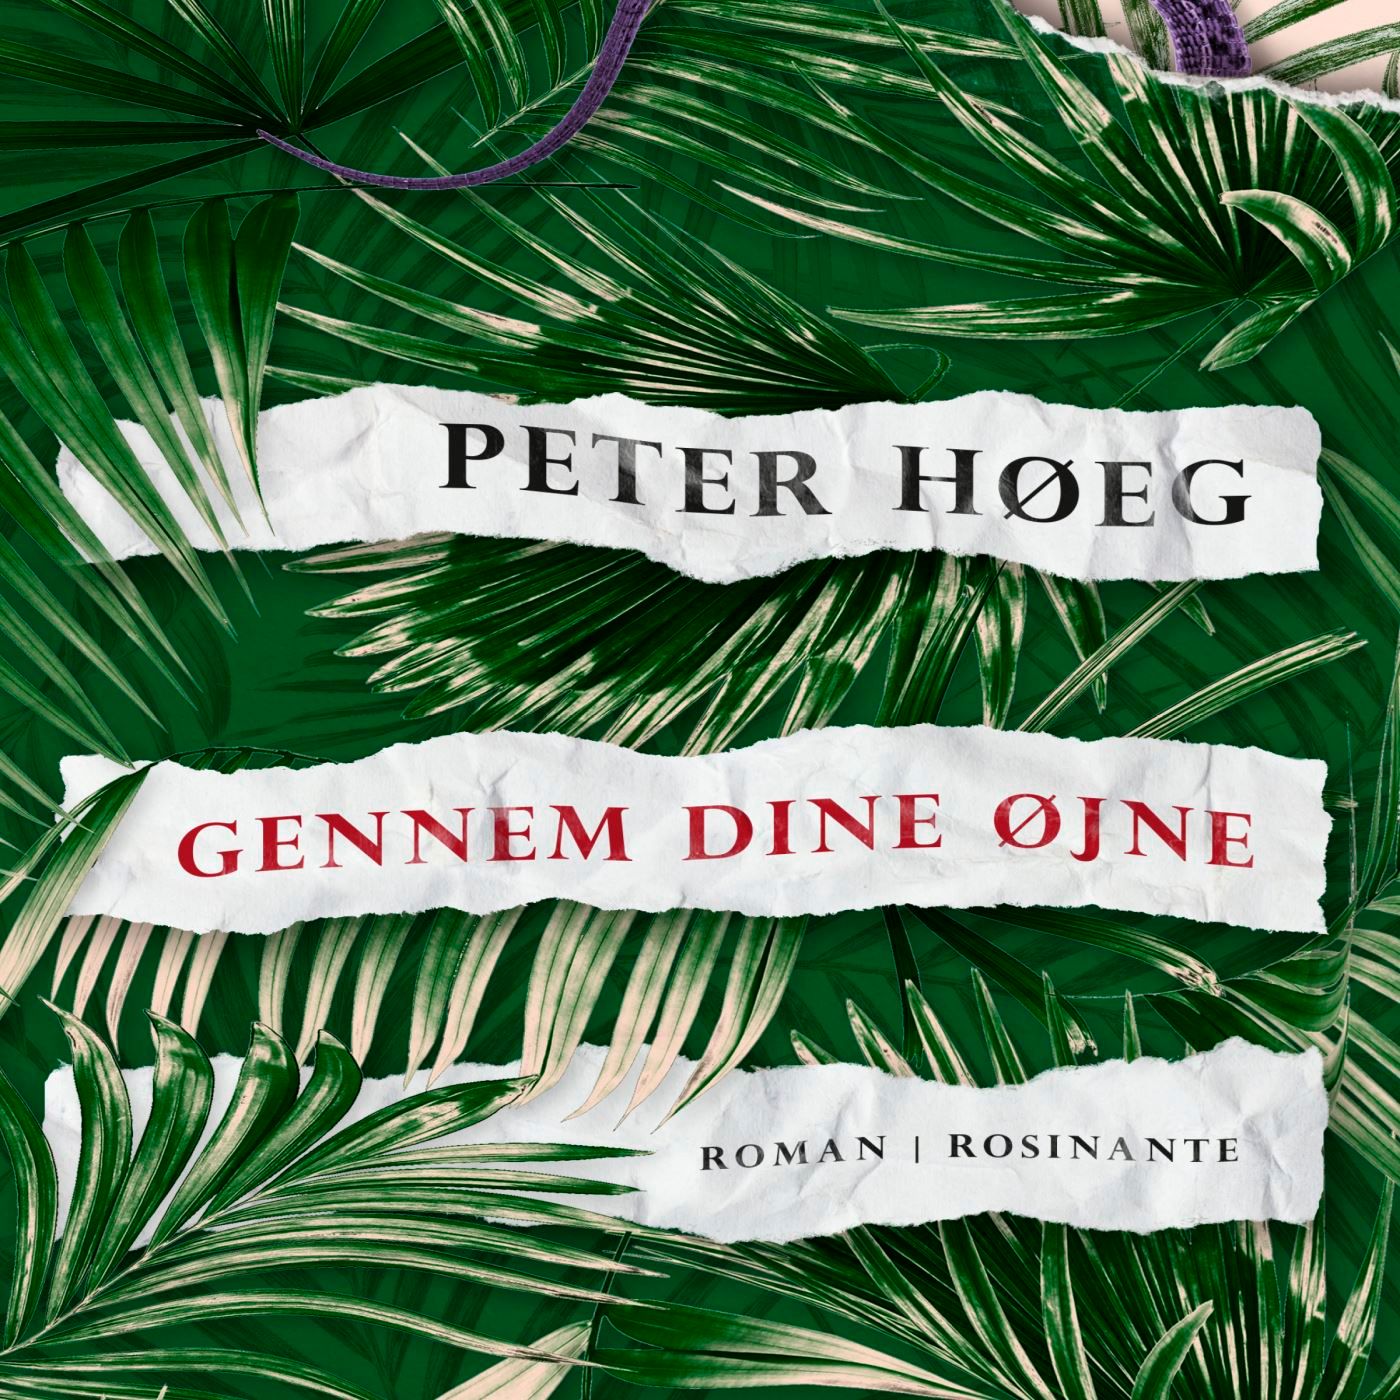 Gennem dine øjne, ljudbok av Peter Høeg